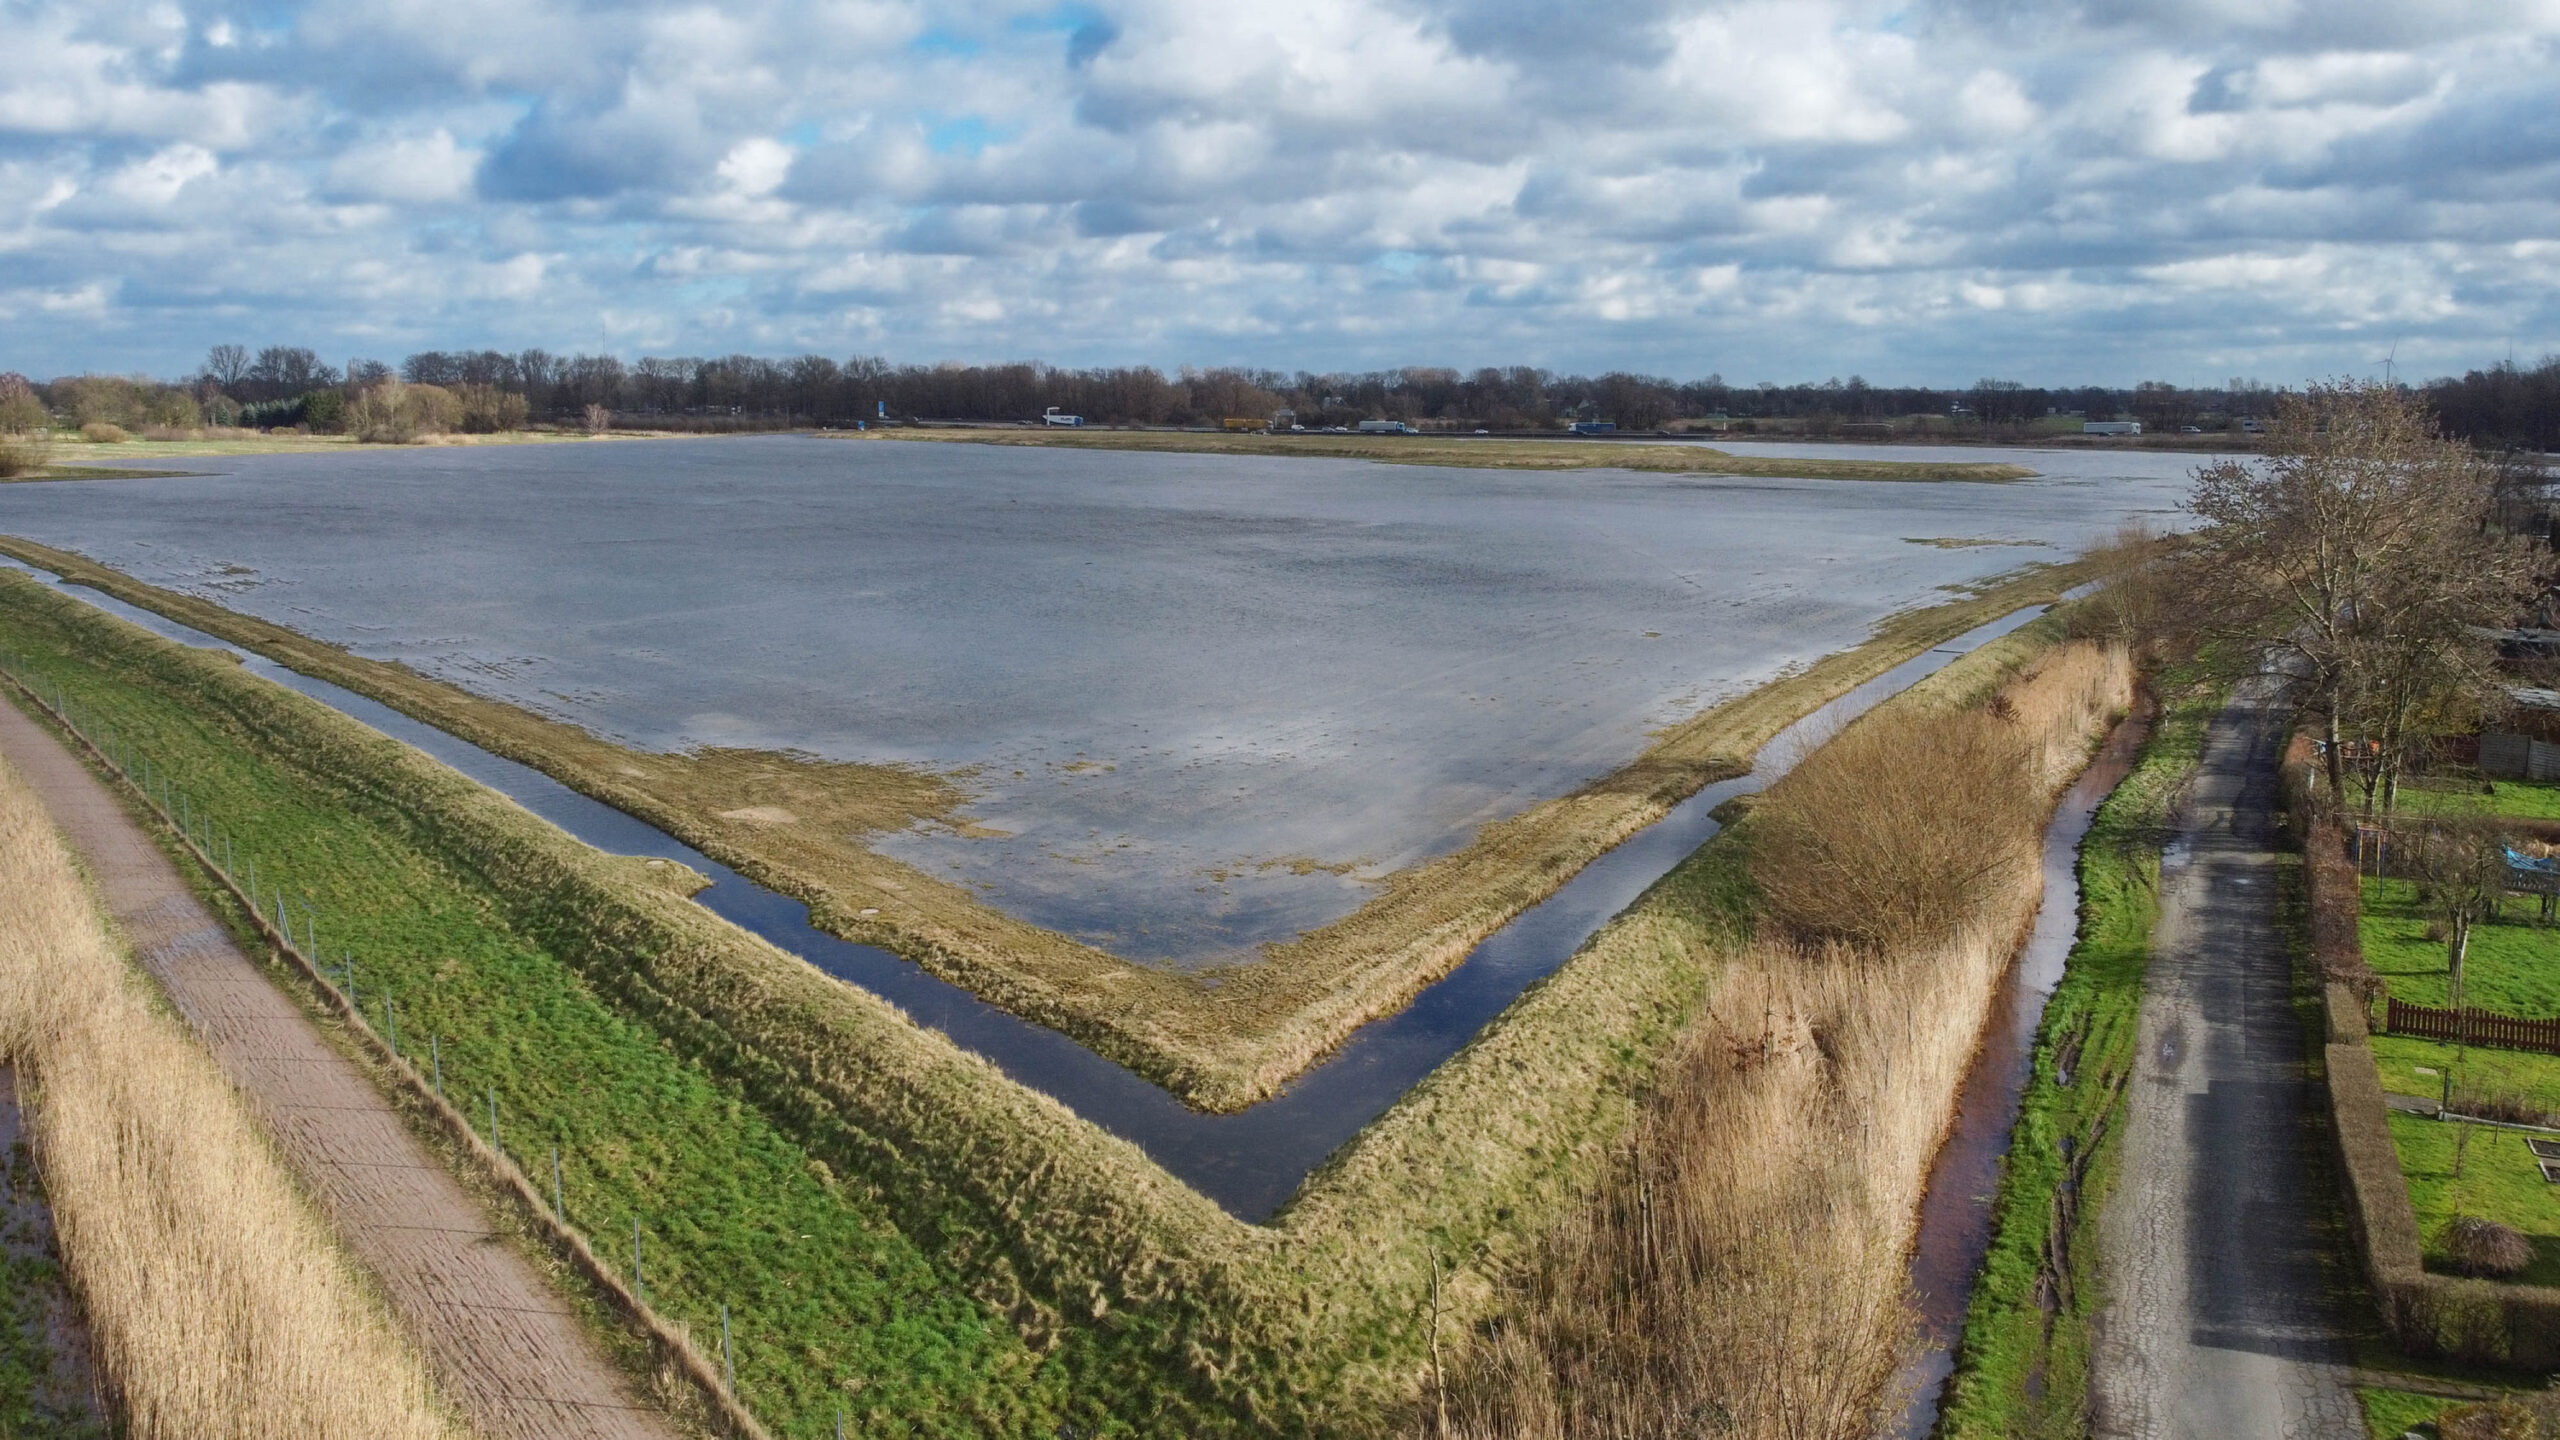 Kein quadratischer See, sondern die seit Jahren brachliegende Gewerbefläche Neuland 23 an der A1-Abfahrt Harburg.